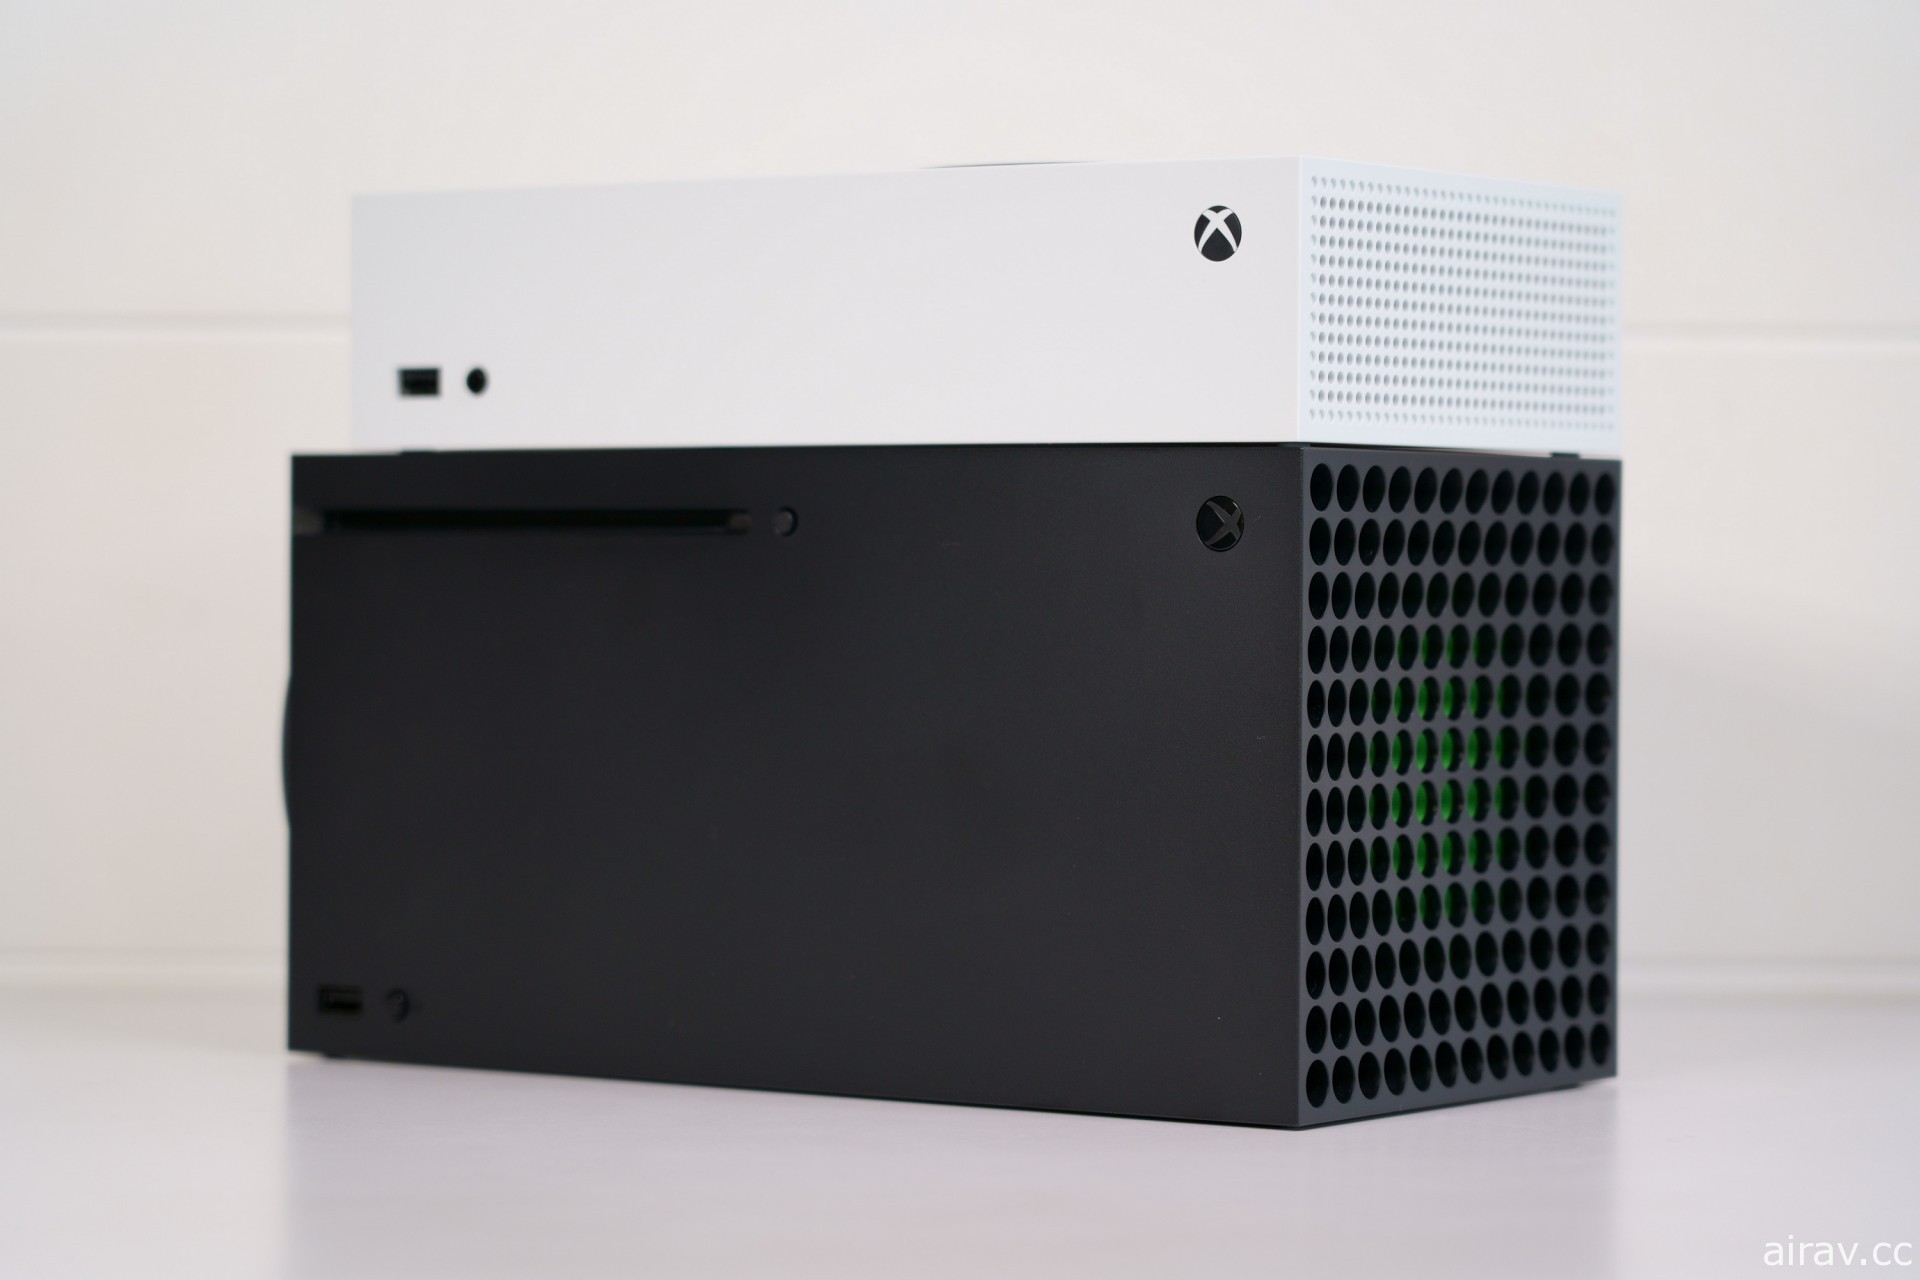 【專欄】Xbox Series X | S 常見問答大彙整！ 解答你想知道的新主機相關疑問